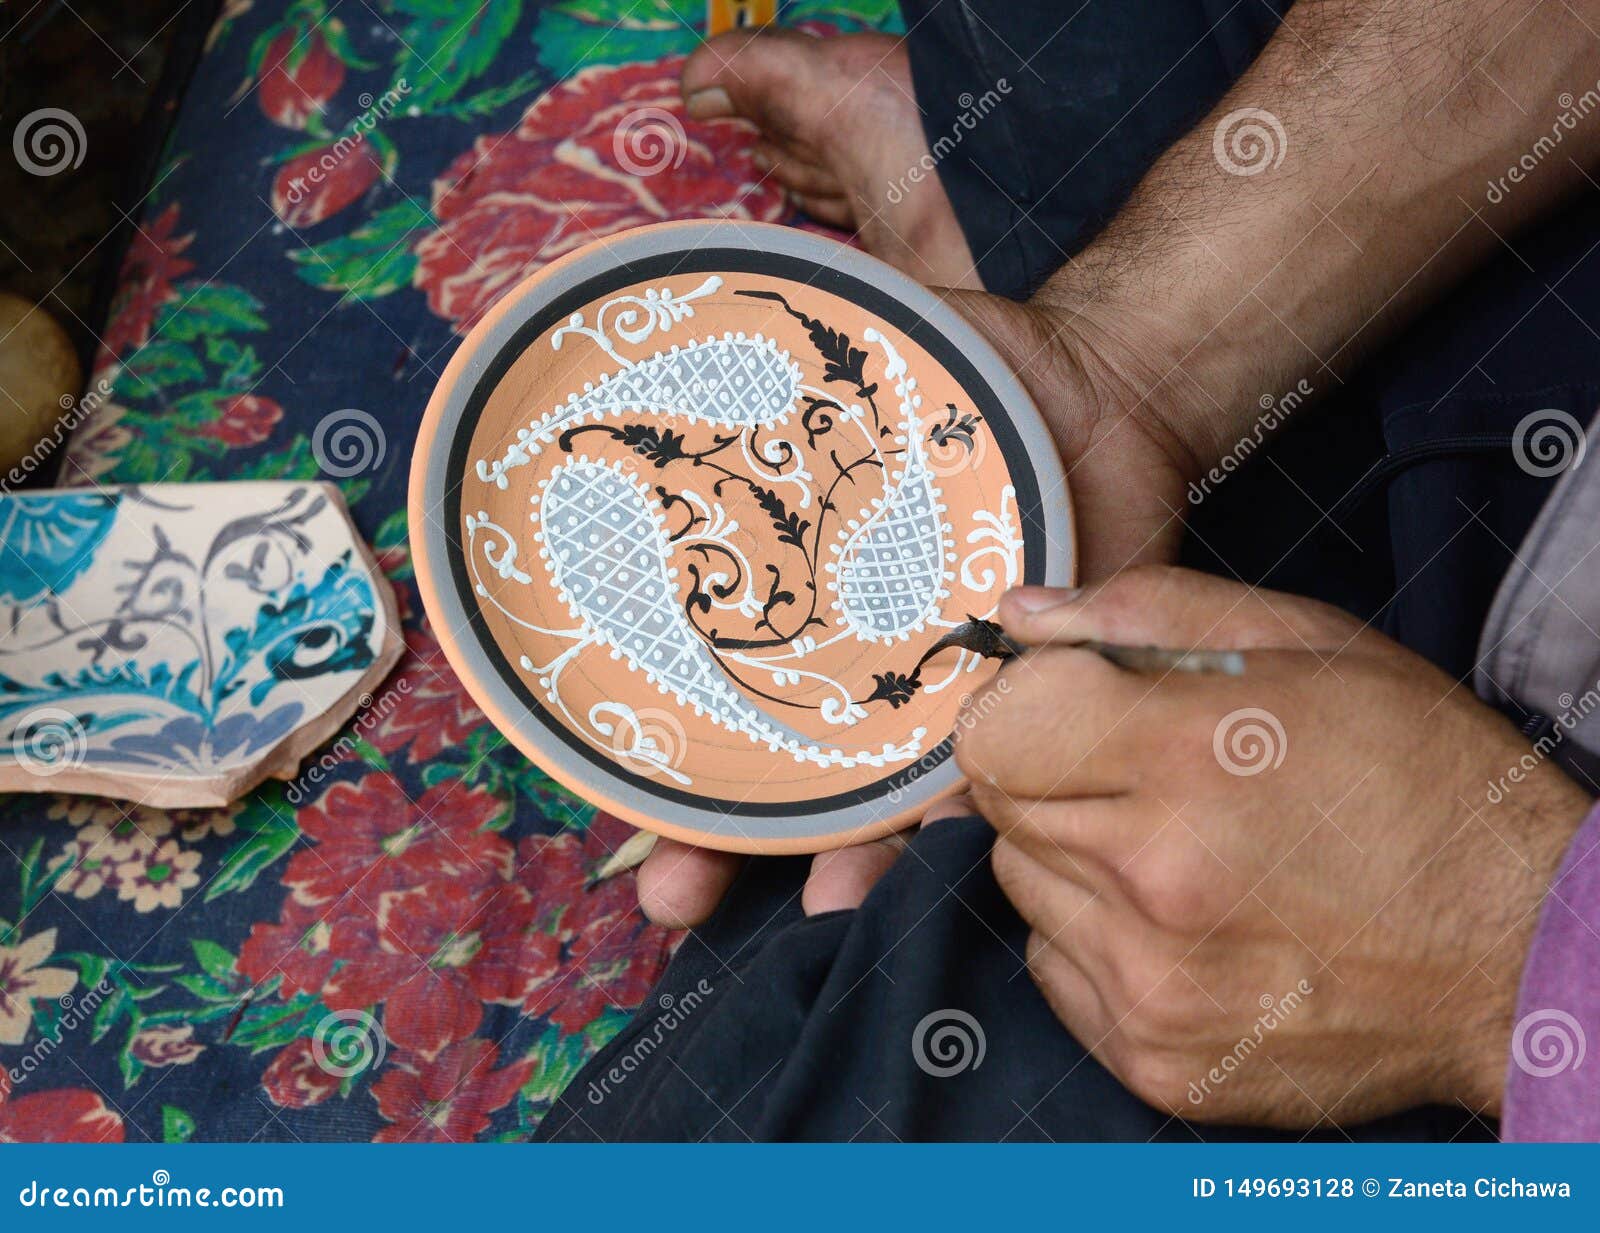 Handmade Souvenirs From Central Asia, Fergana, Uzbekistan, Silk Route